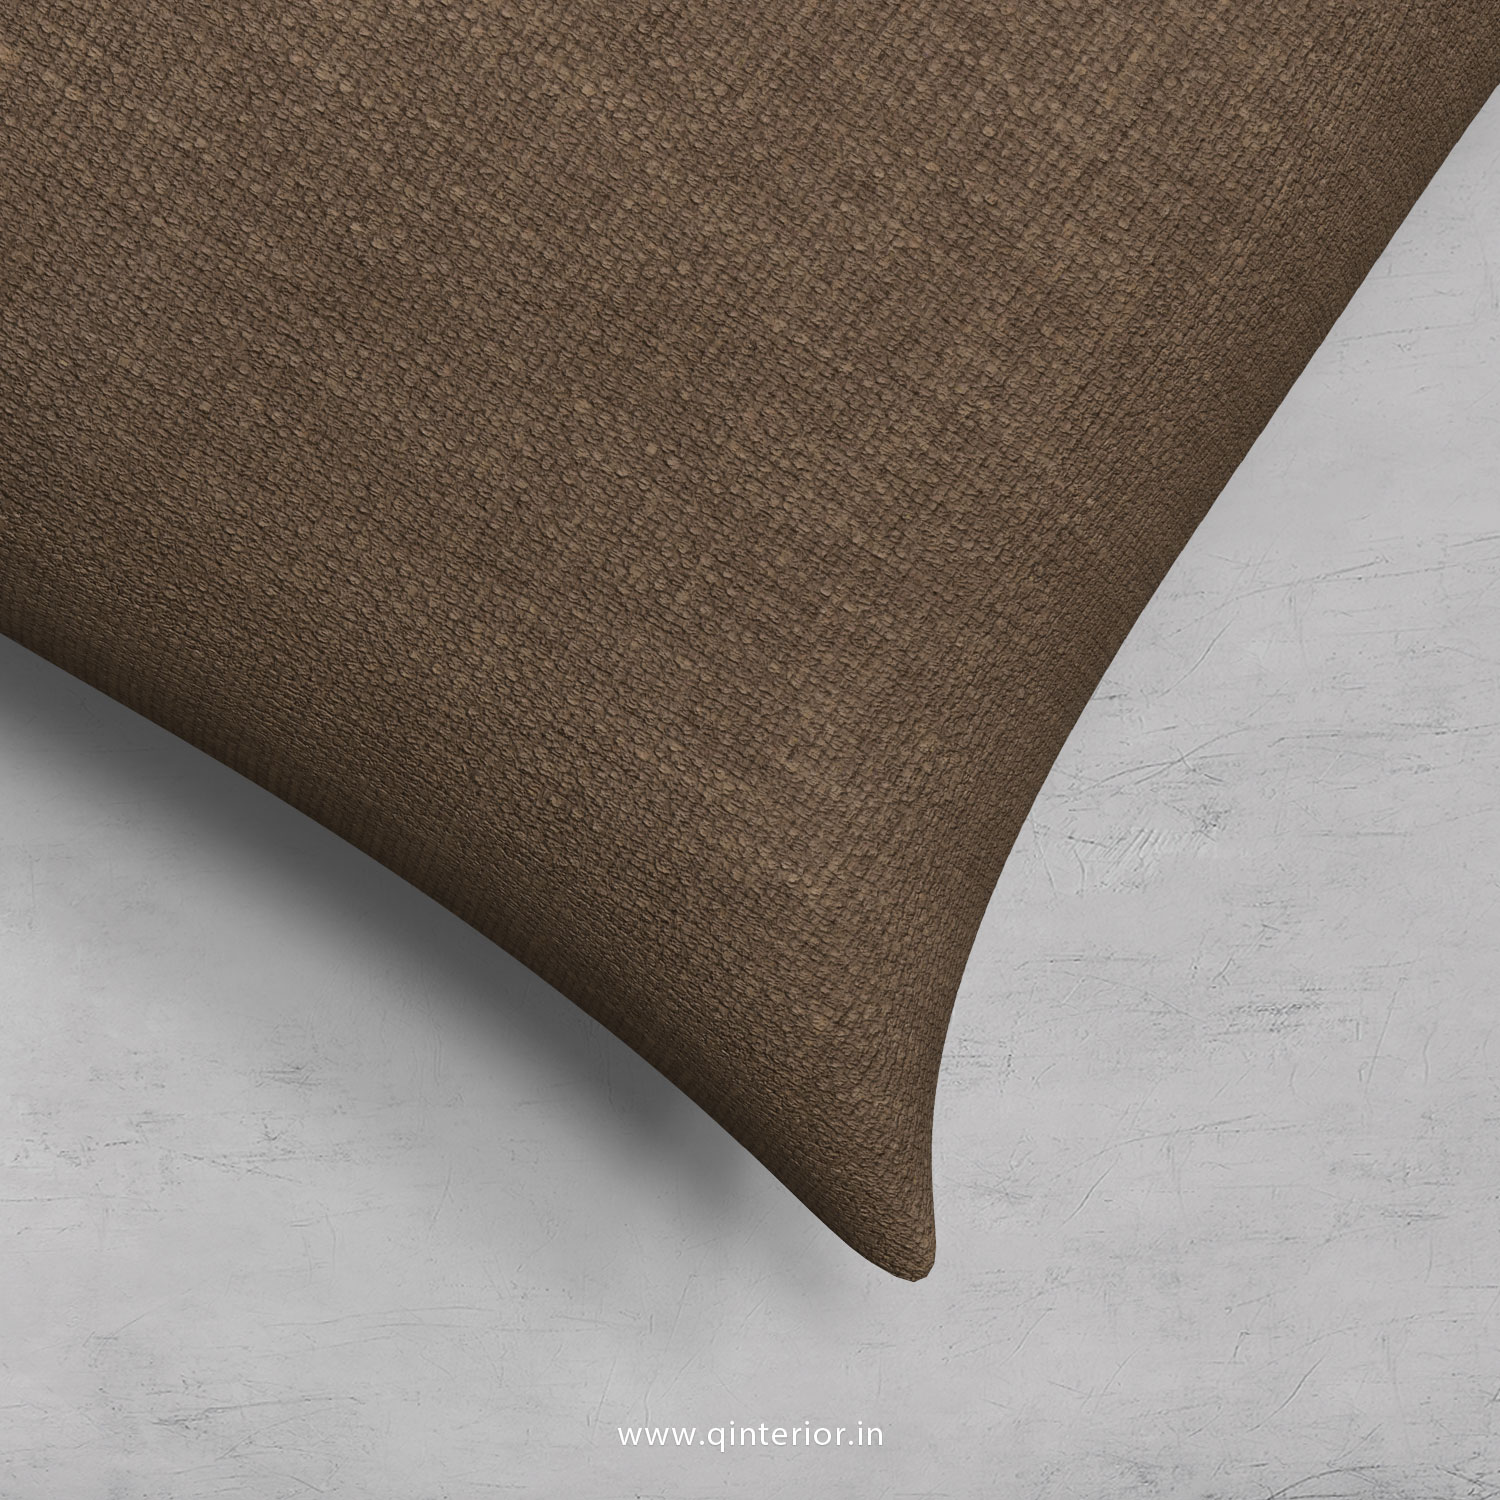 Cushion With Cushion Cover in Cotton Plain - CUS001 CP08